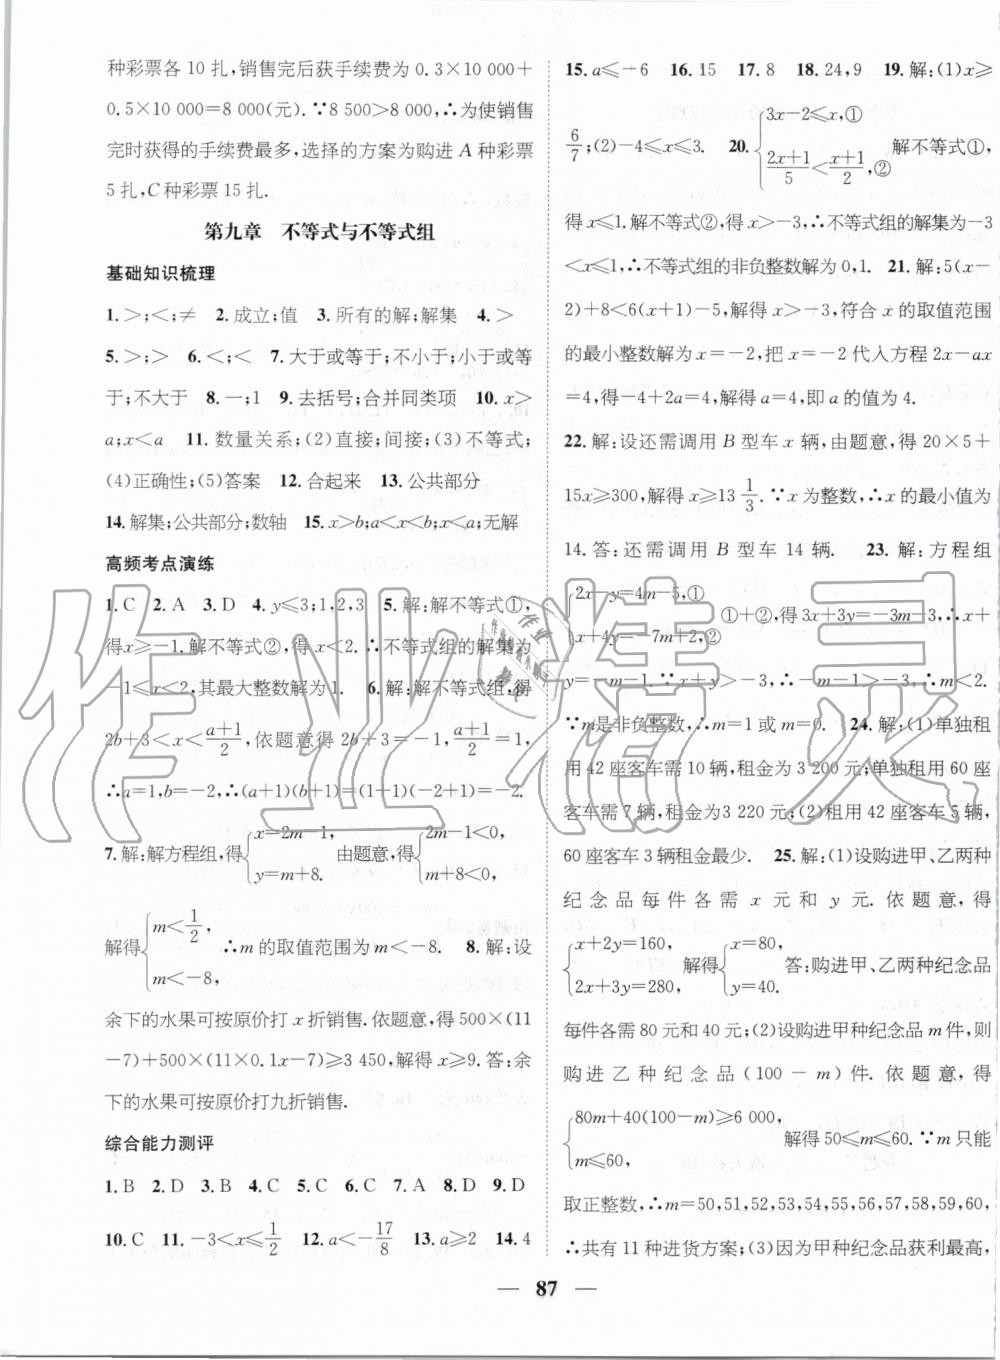 2019年人教版鸿鹄志文化期末冲刺王暑假作业七年级数学答案